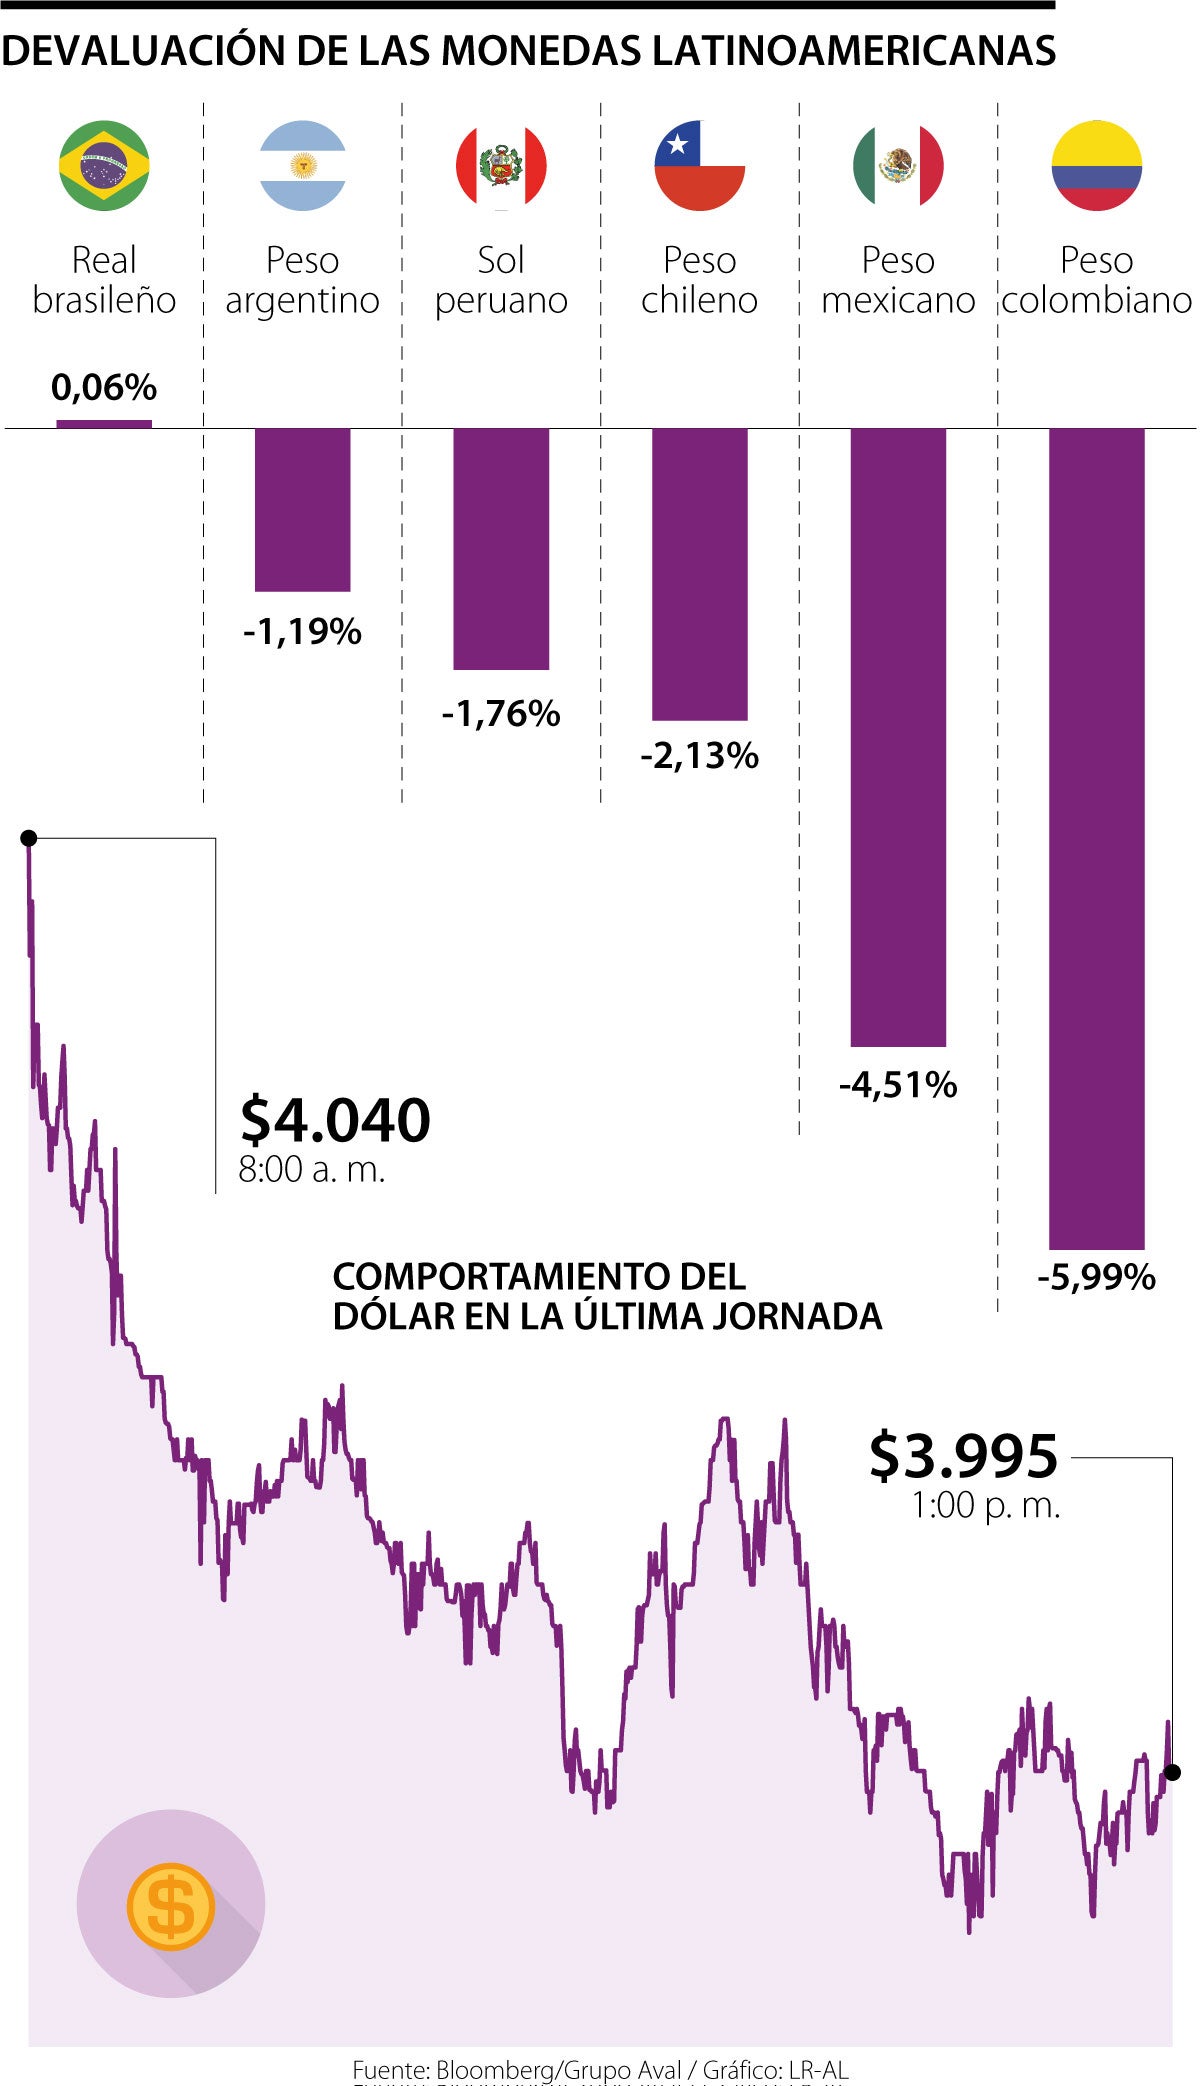 Peso colombiano es la moneda más devaluada de Latinoamérica en el